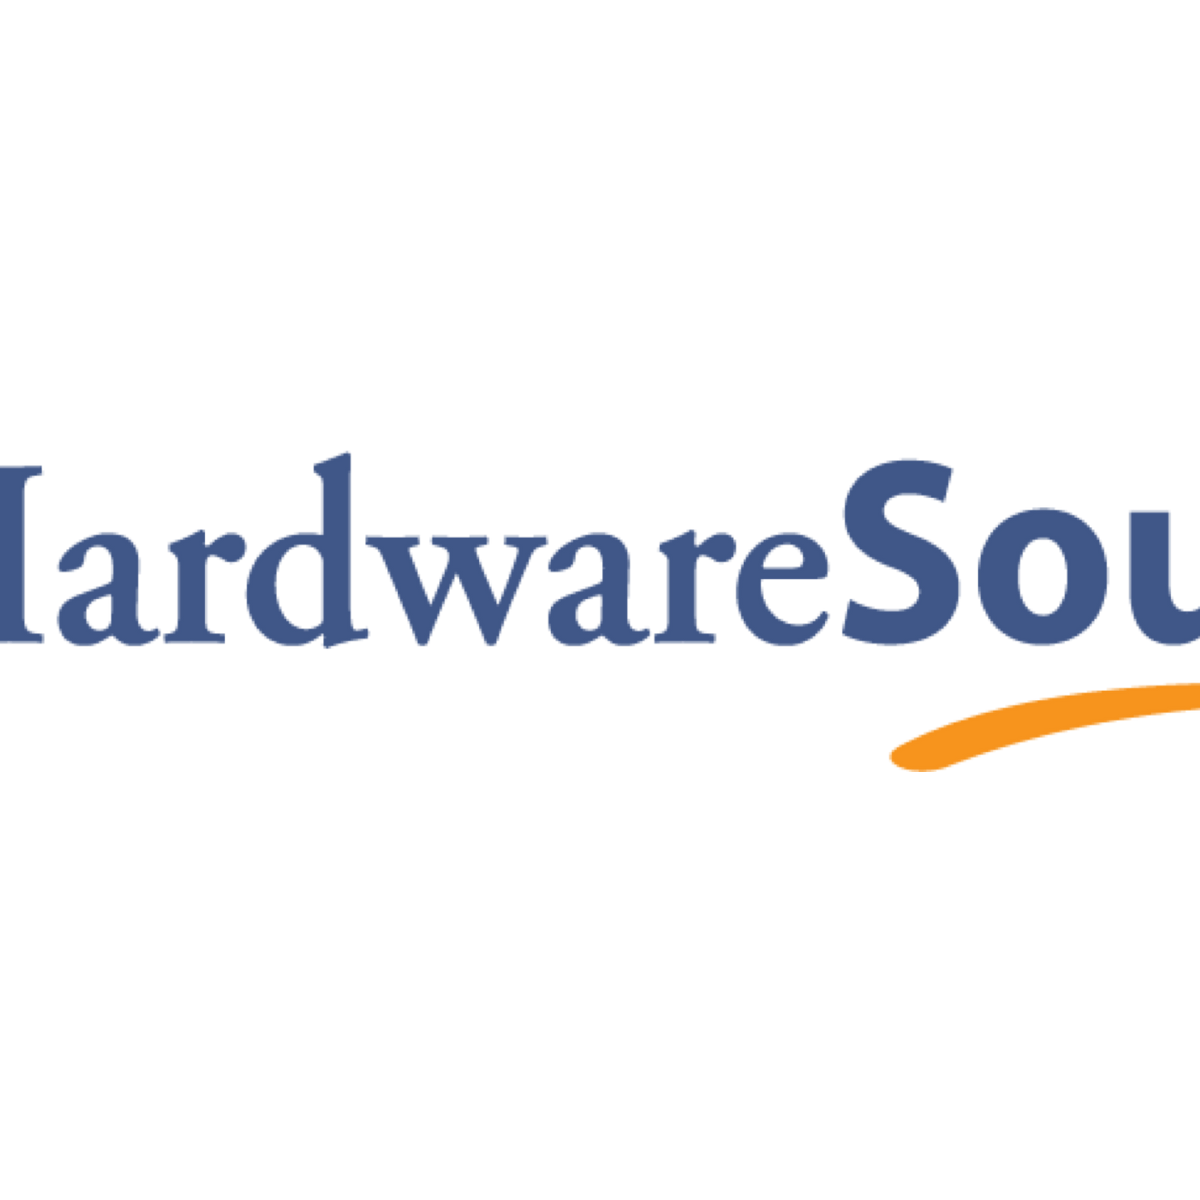 www.hardwaresource.com